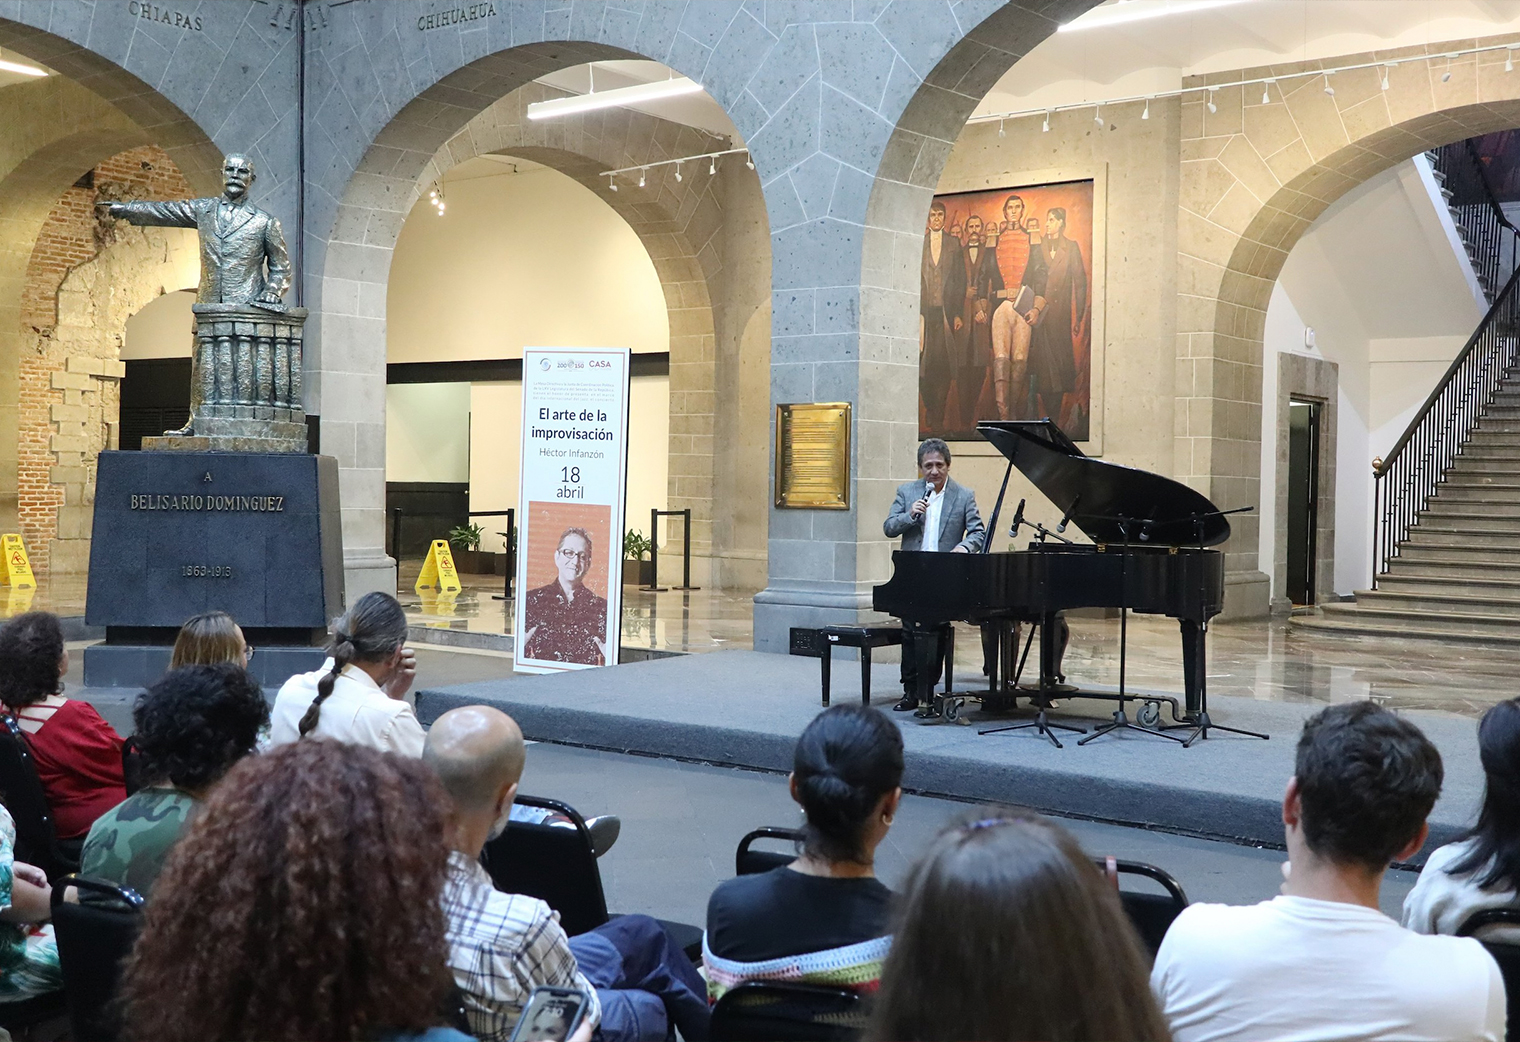 “El arte de la improvisación” con Héctor Infanzón, concierto en el marco del Día Internacional del Jazz